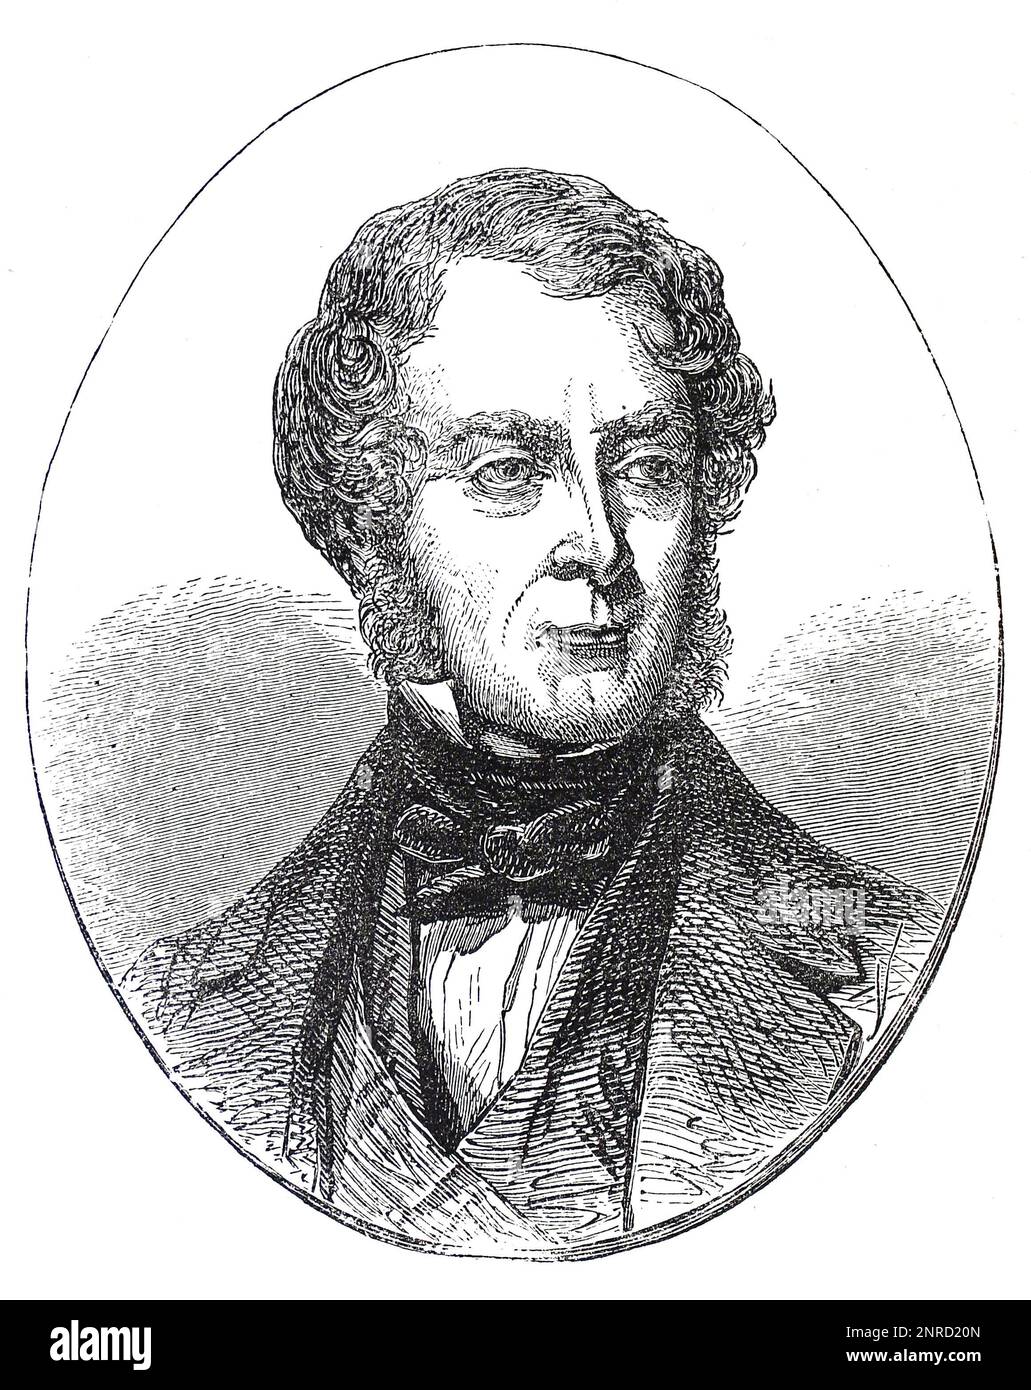 Porträt von George Villiers, 4. Earl of Clarendon. Schwarzweiß-Illustration. Clarendon war 1856 der führende britische Repräsentant auf dem Pariser Kongress, der den Krimkrieg beendete. Stockfoto